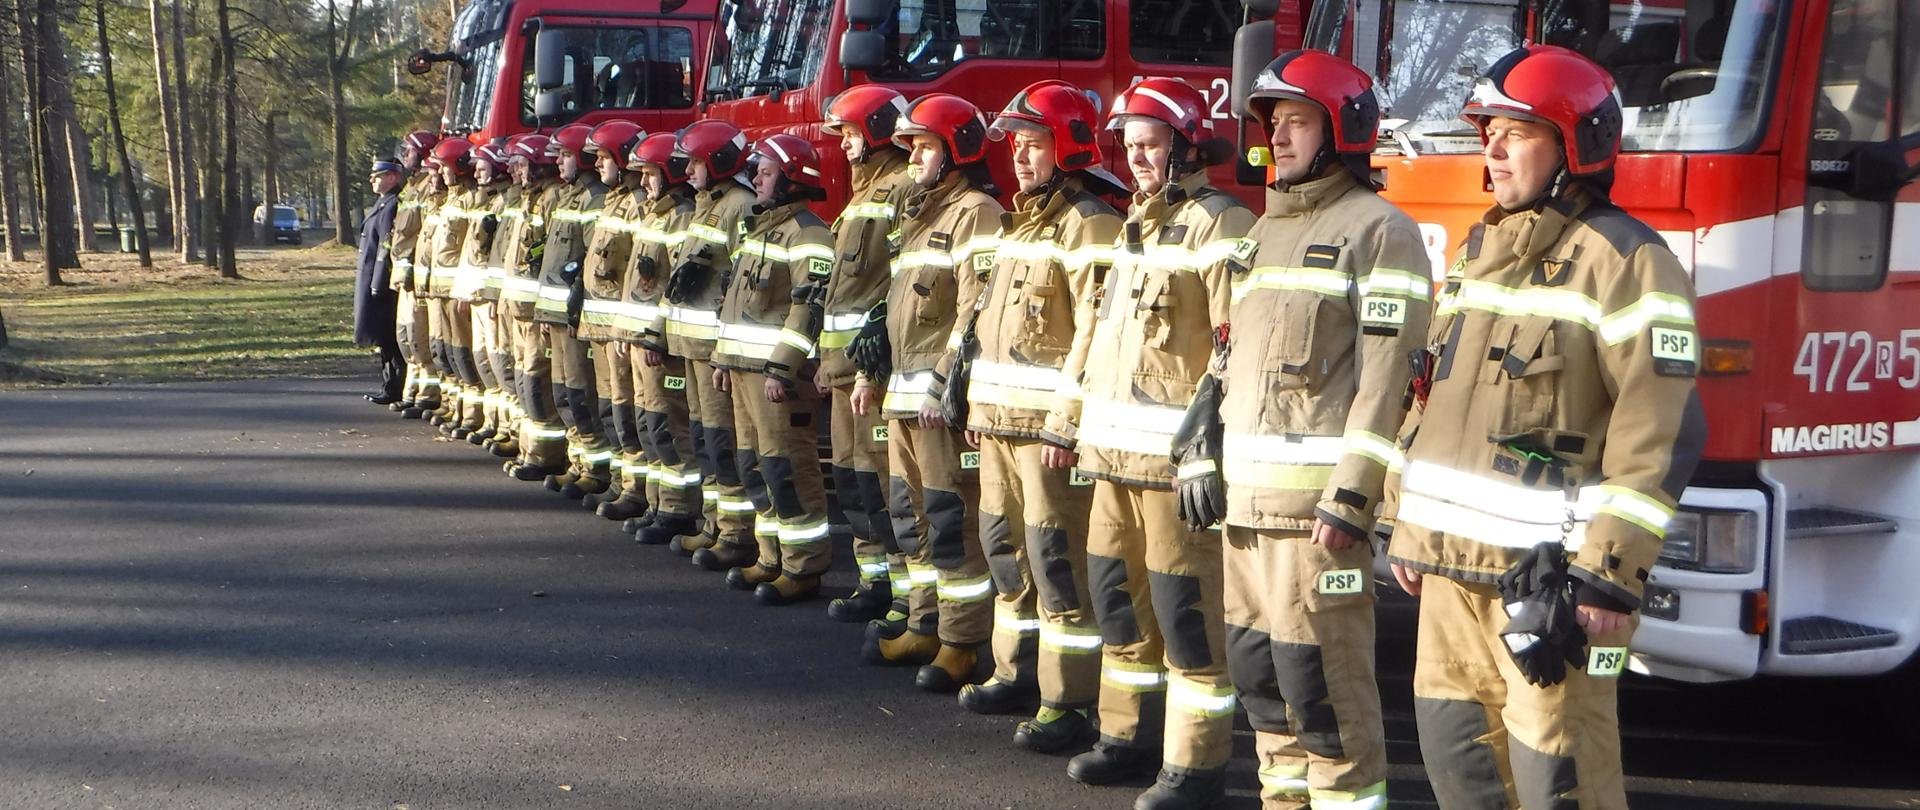 Na zdjęciu widzimy strażaków z Komendy Powiatowej Państwowej Straży Pożarnej w Leżajsku, którzy w milczeniu stoją na baczność w szeregu na tle pojazdów pożarniczych. W ten sposób, uczcili minutą ciszy bohaterskich ratowników Ukrainy, którzy oddali swoje życie podczas służby w trudnych warunkach i dramatycznych dniach wojny.